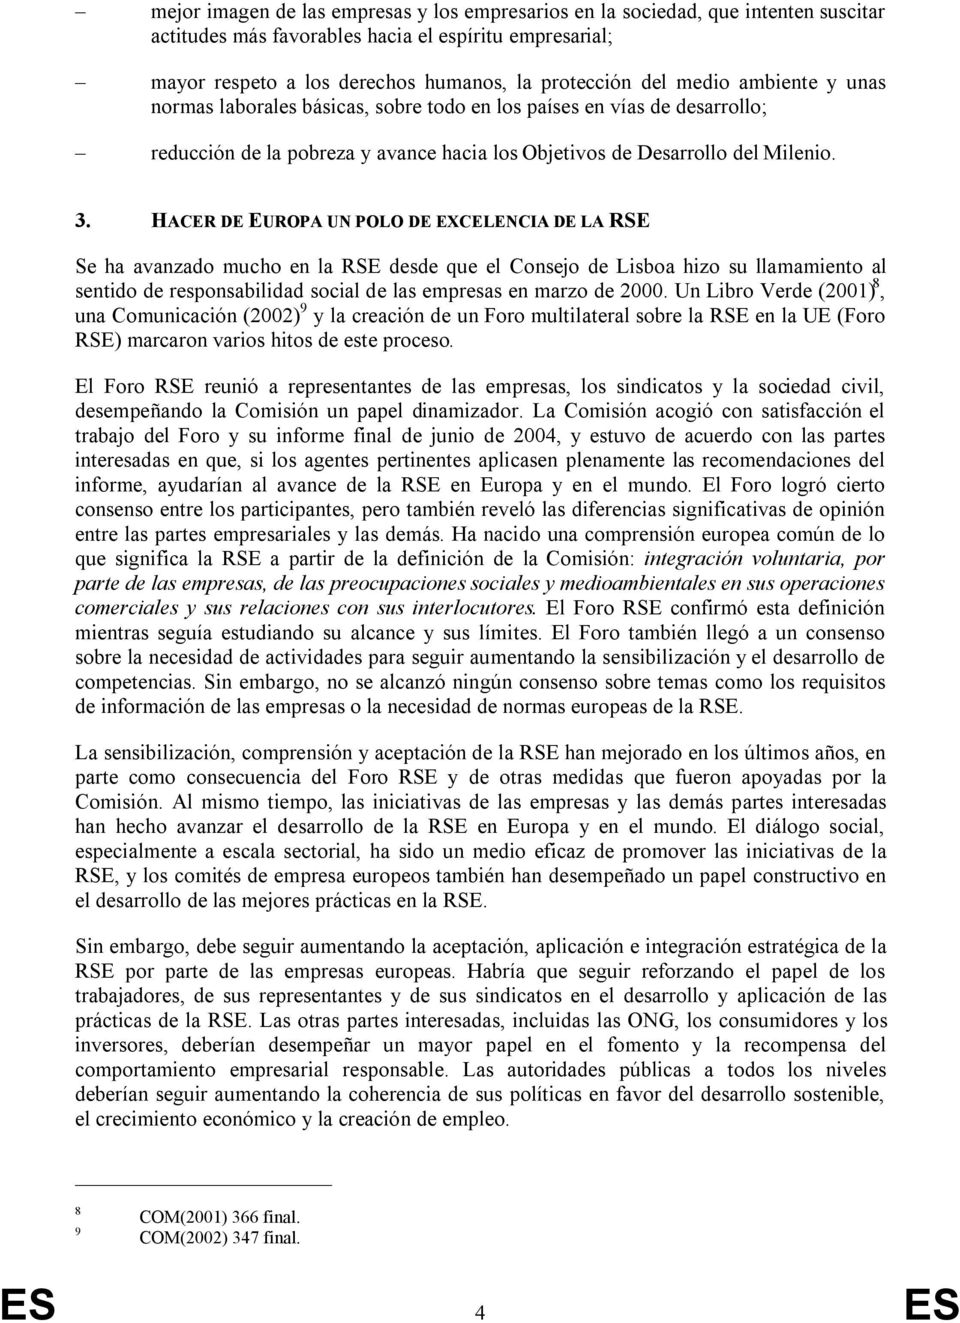 HACER DE EUROPA UN POLO DE EXCELENCIA DE LA RSE Se ha avanzado mucho en la RSE desde que el Consejo de Lisboa hizo su llamamiento al sentido de responsabilidad social de las empresas en marzo de 2000.